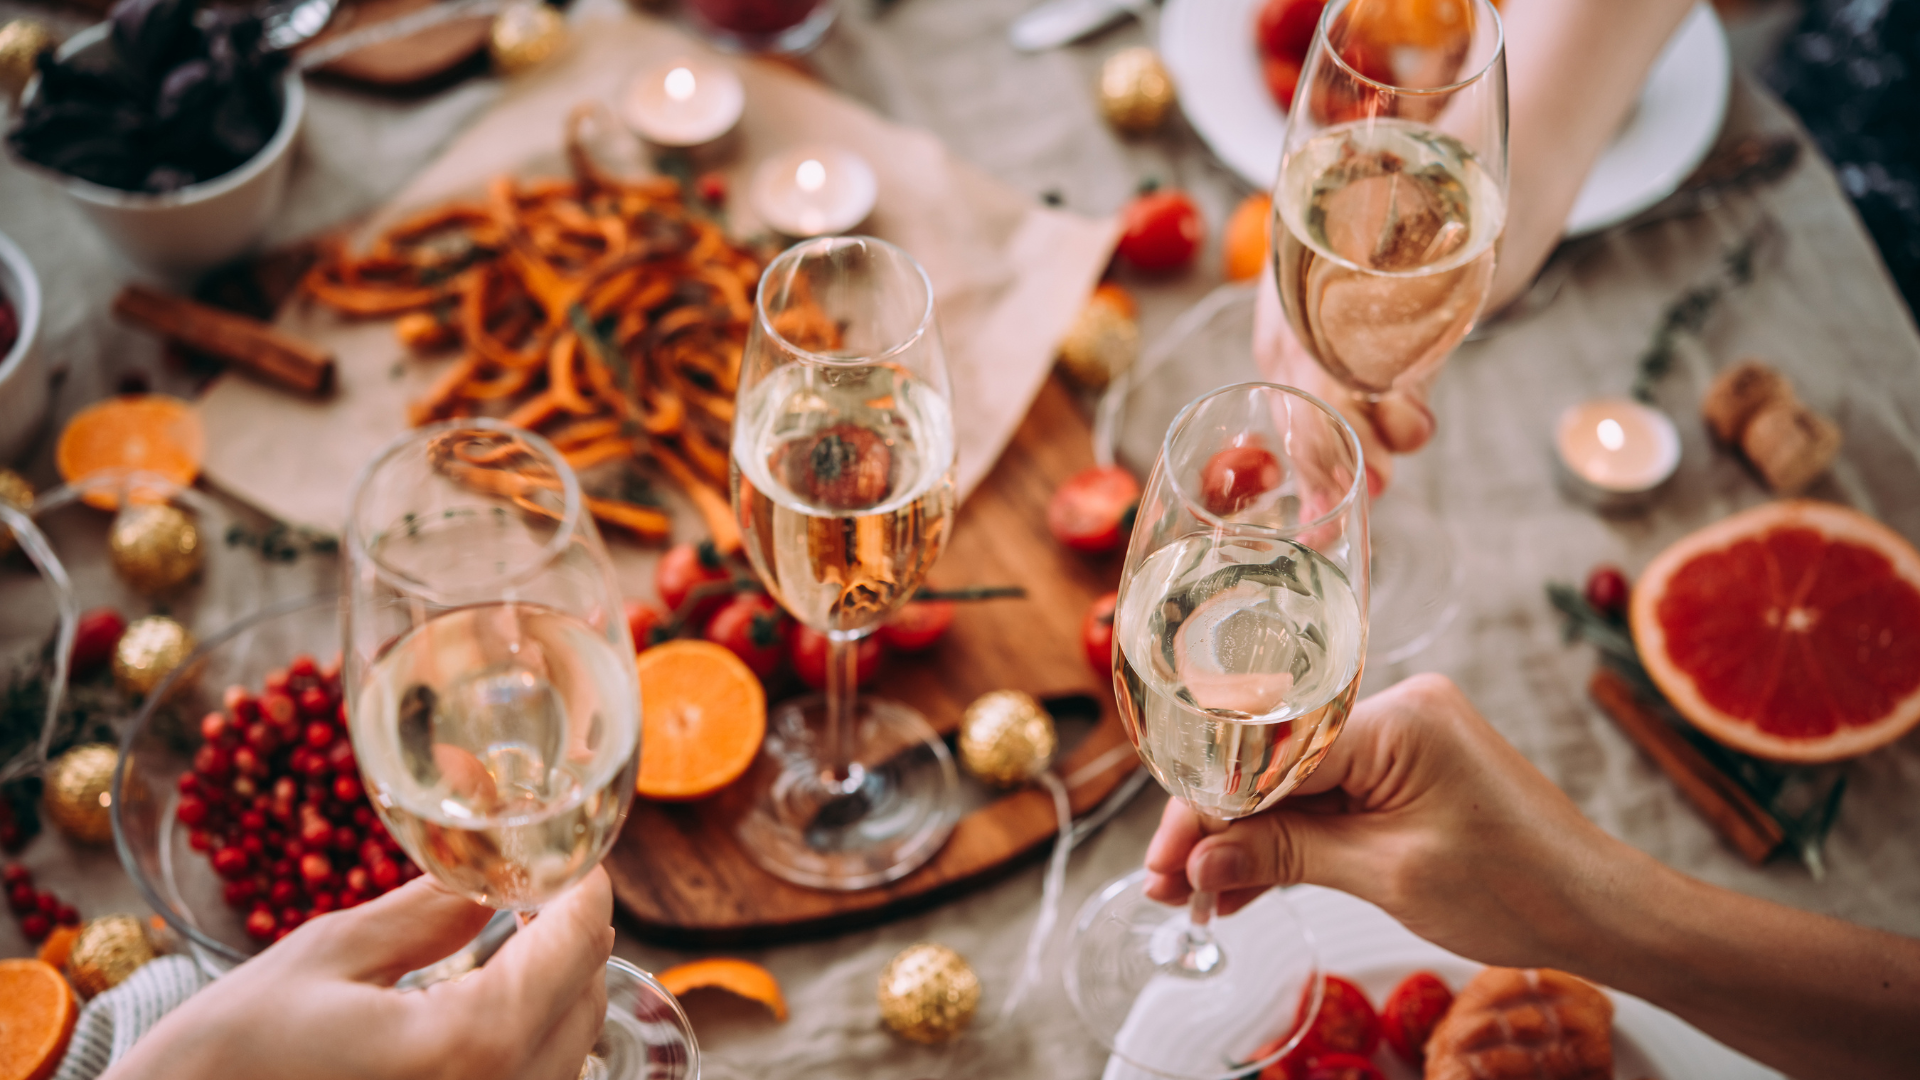 Vinhos para a ceia: dicas para harmonizar pratos clássicos do Natal